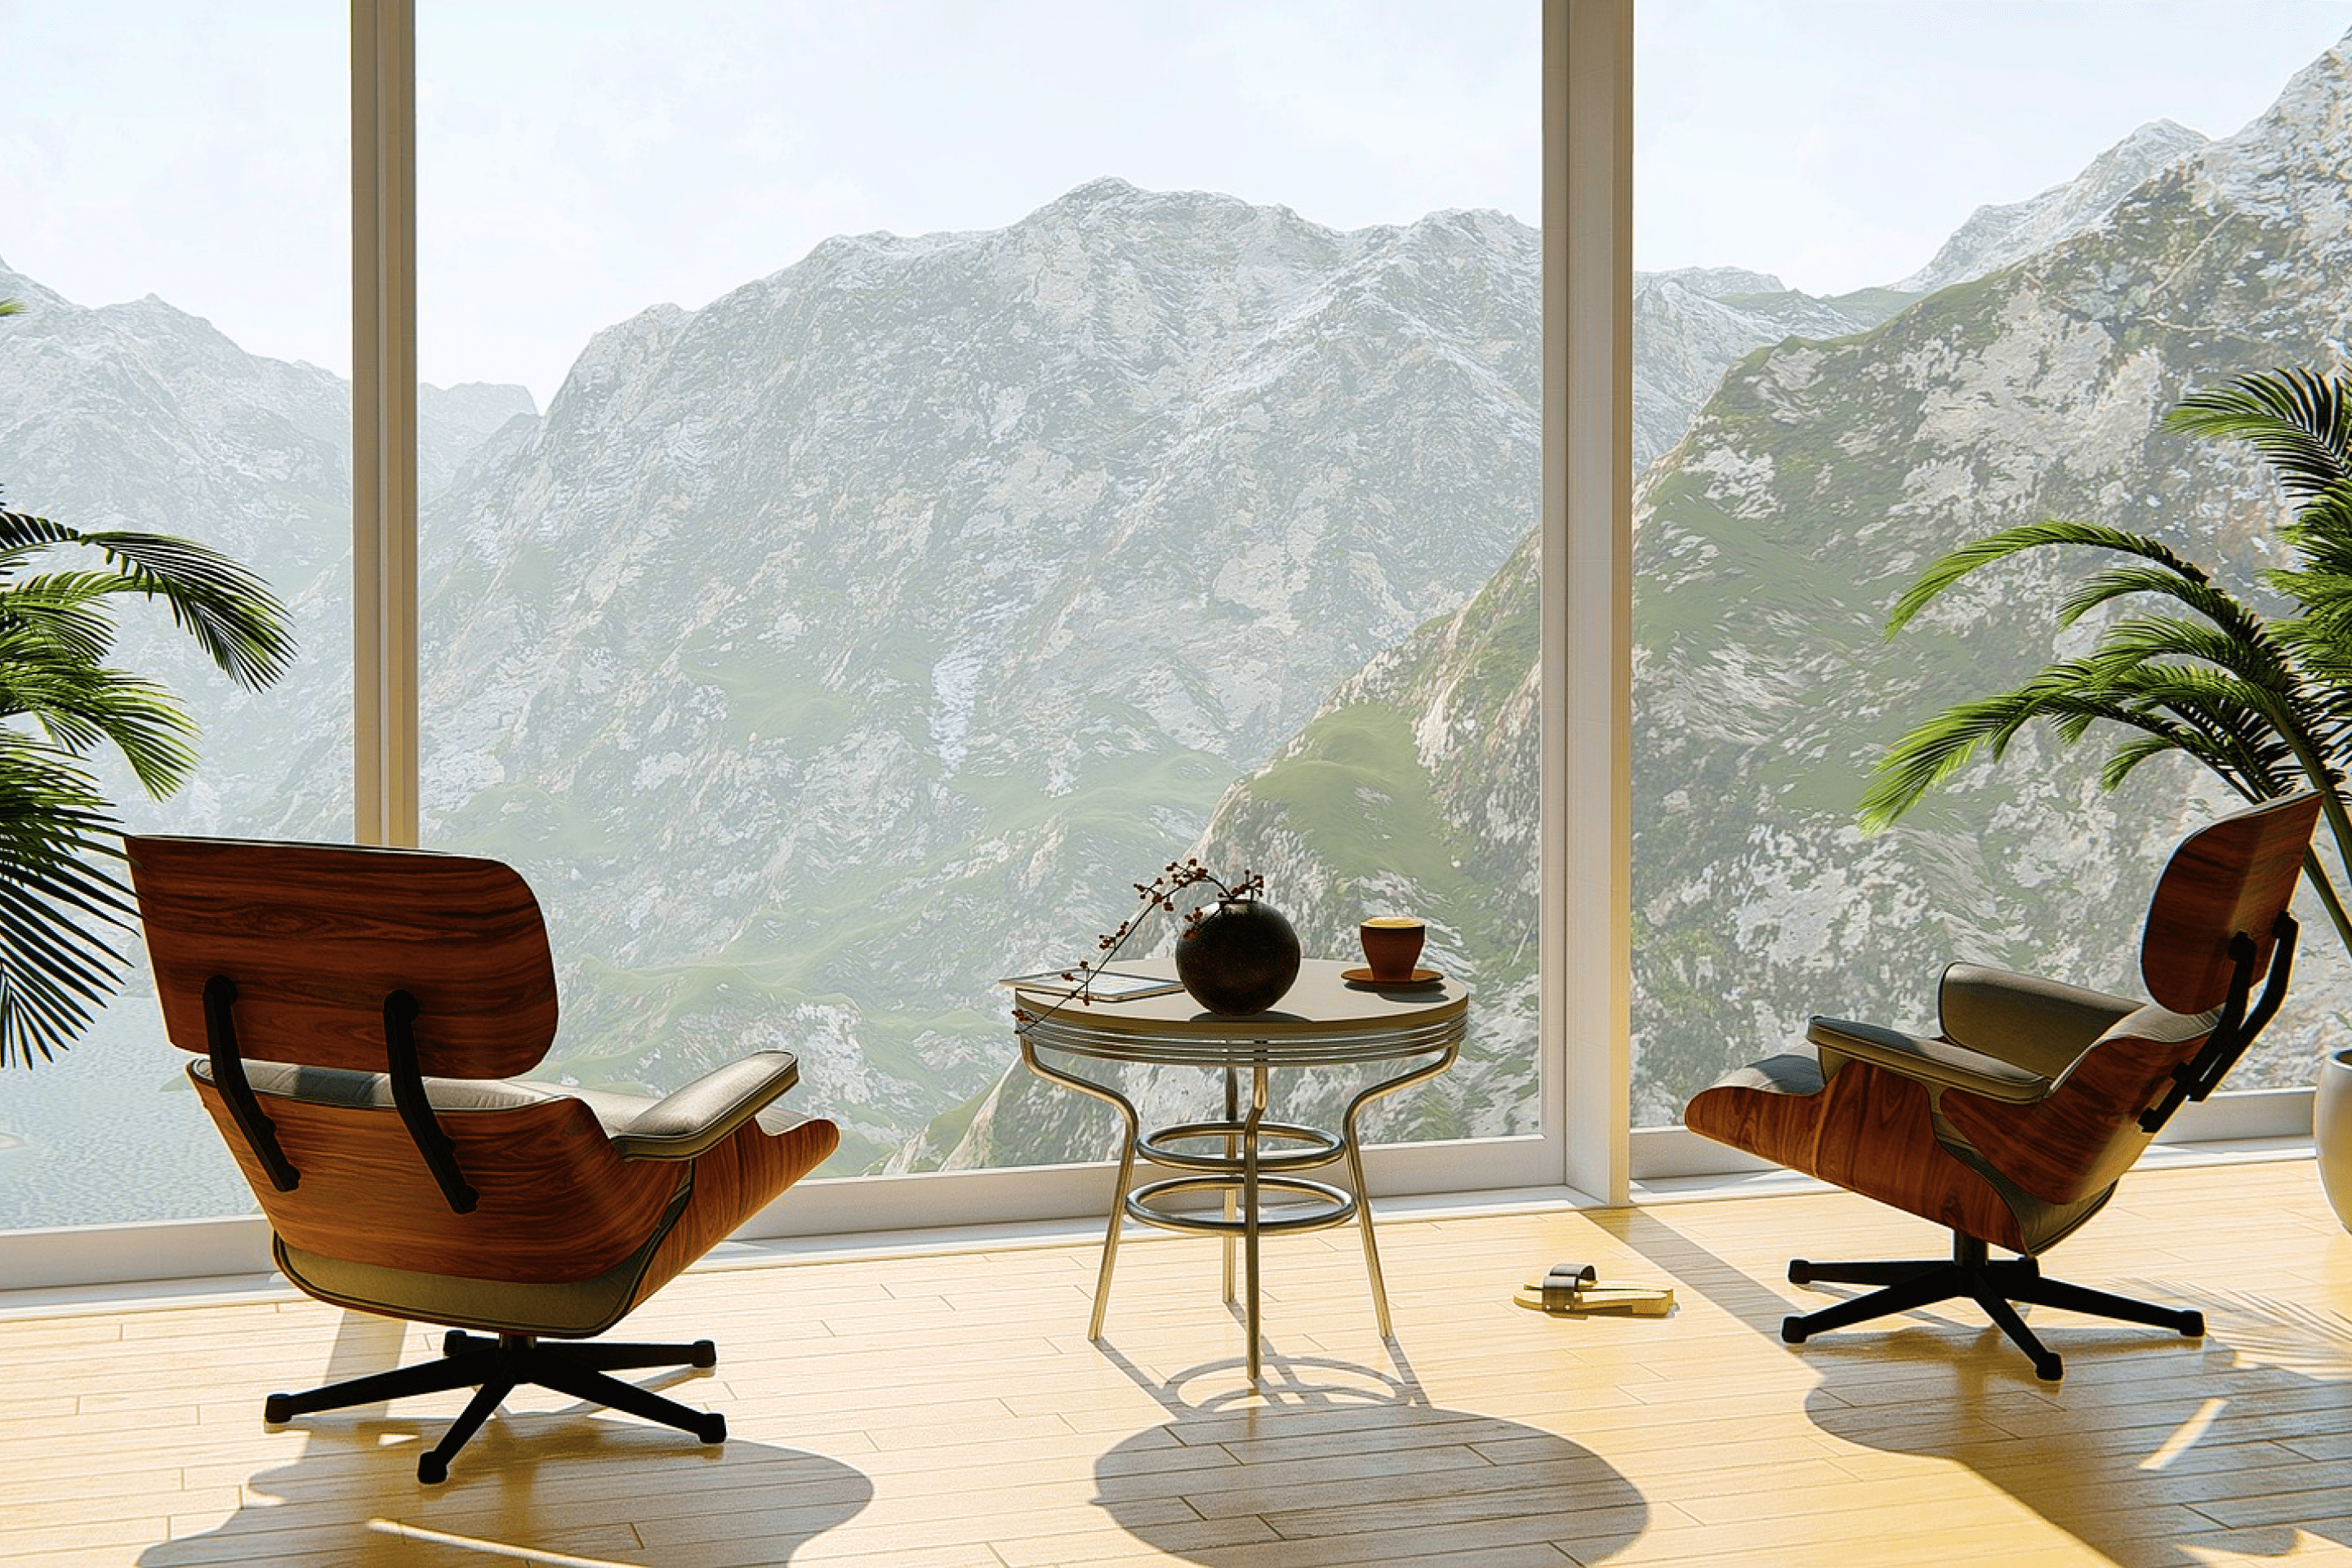 Panoramablick aus einem Zimmer in die Tiroler Berge